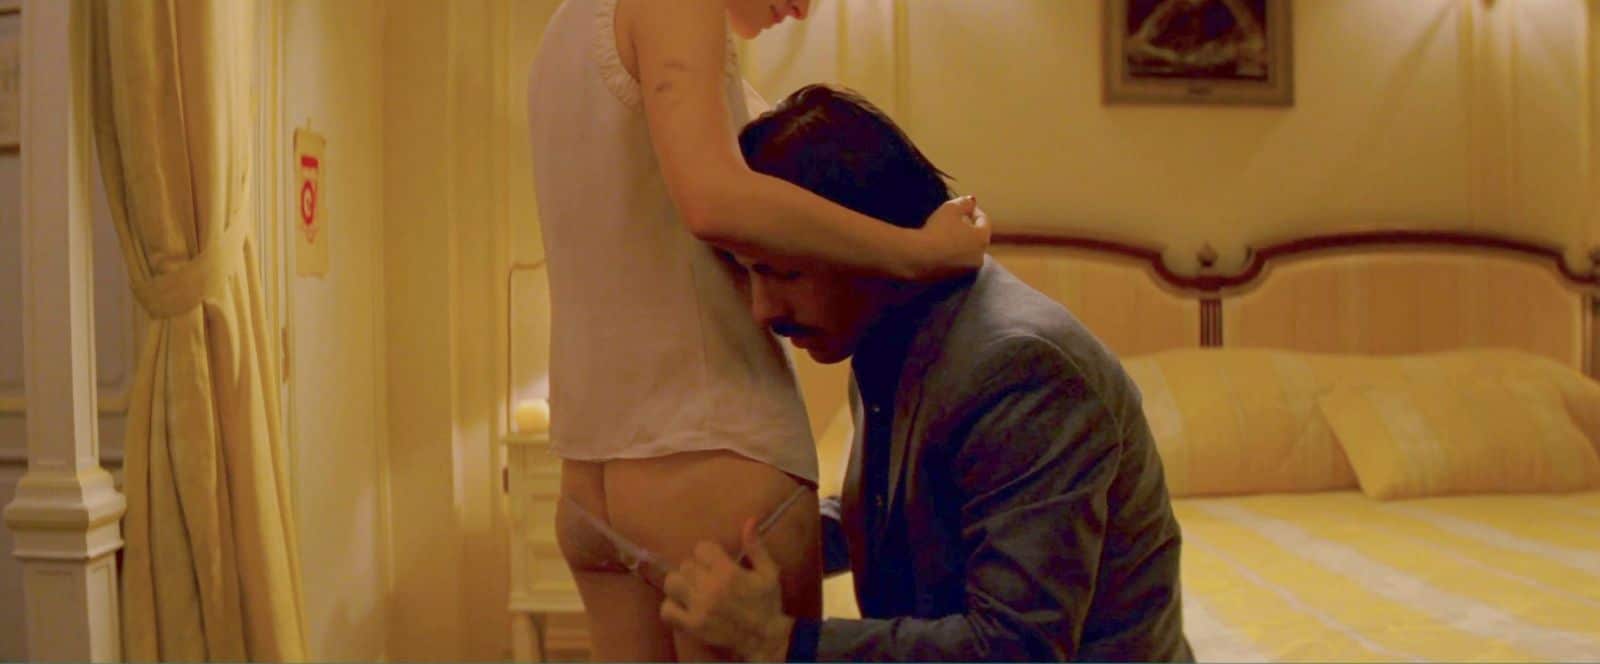 actress natalie portman has her panties taken off in hotel chevalier movie scene